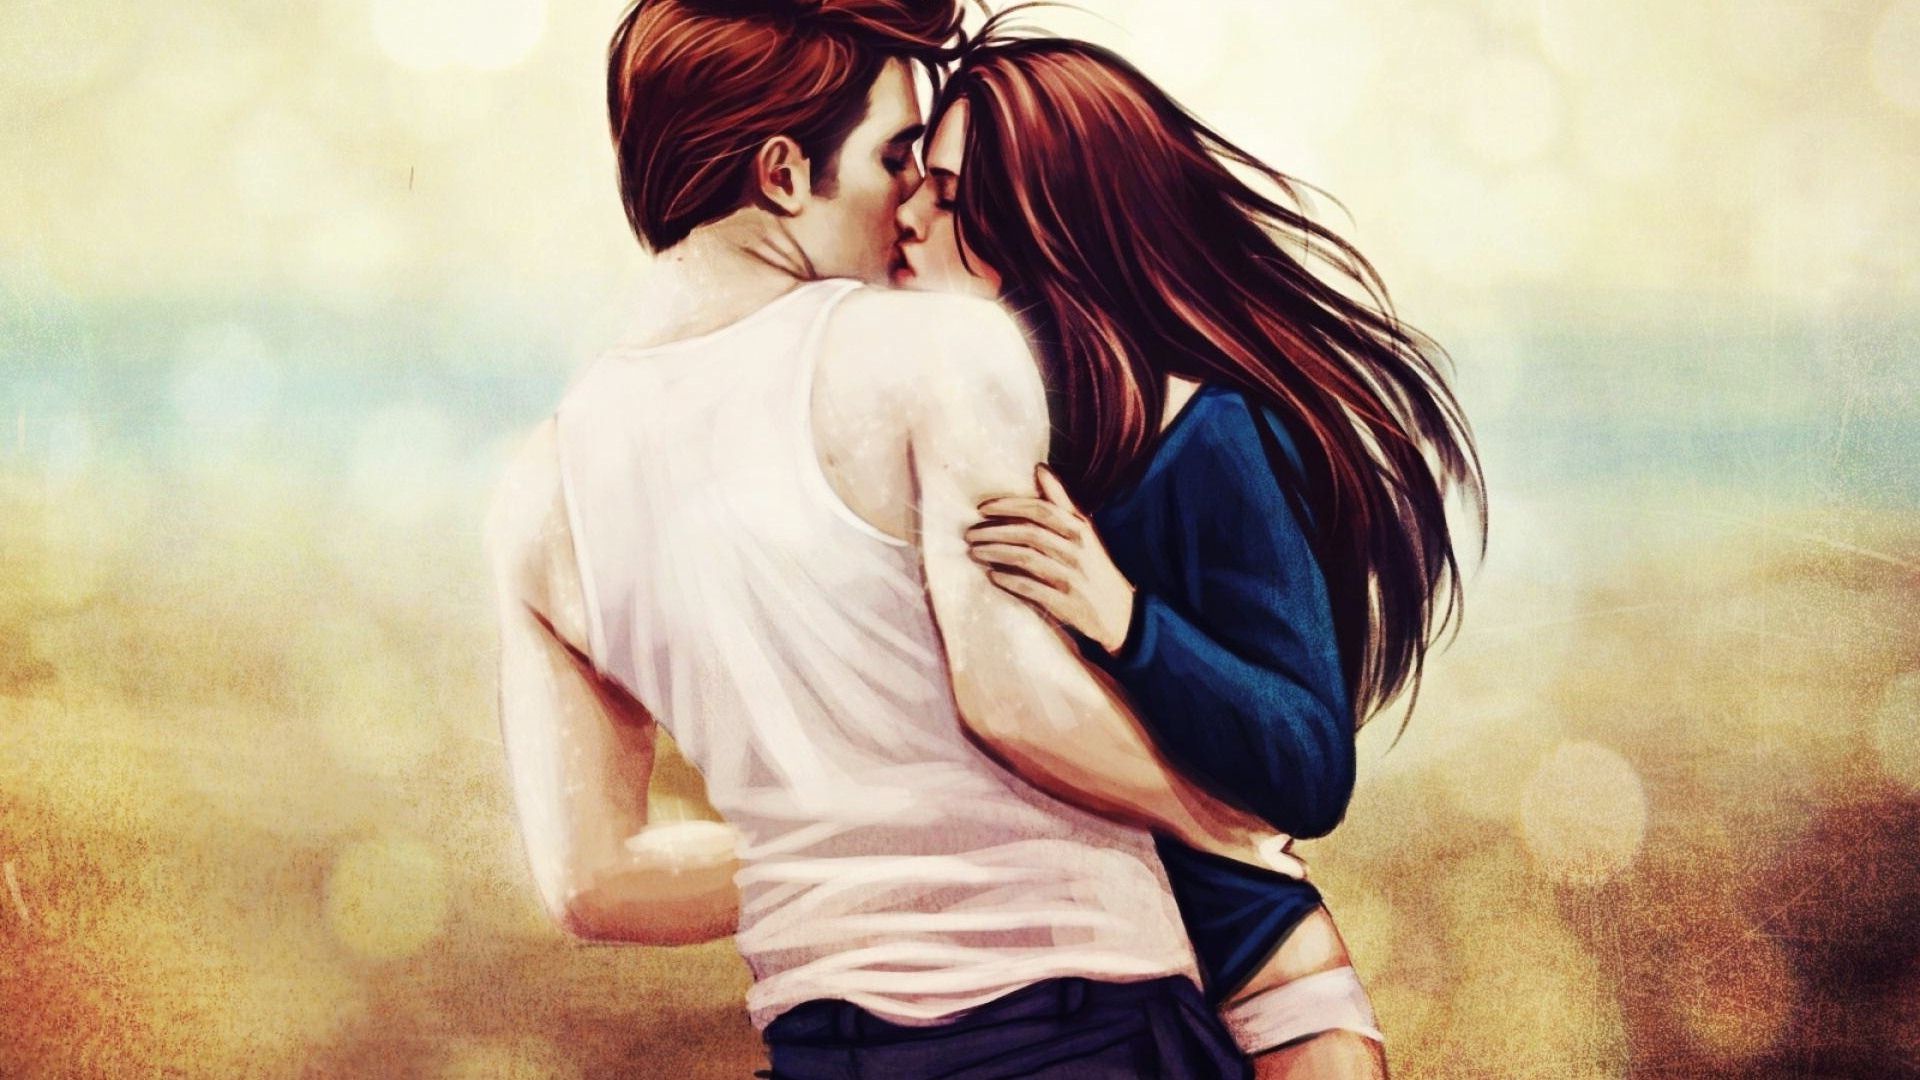 Kristen Stewart Robert Pattinson Kissing Aniamted Art Wallpaper